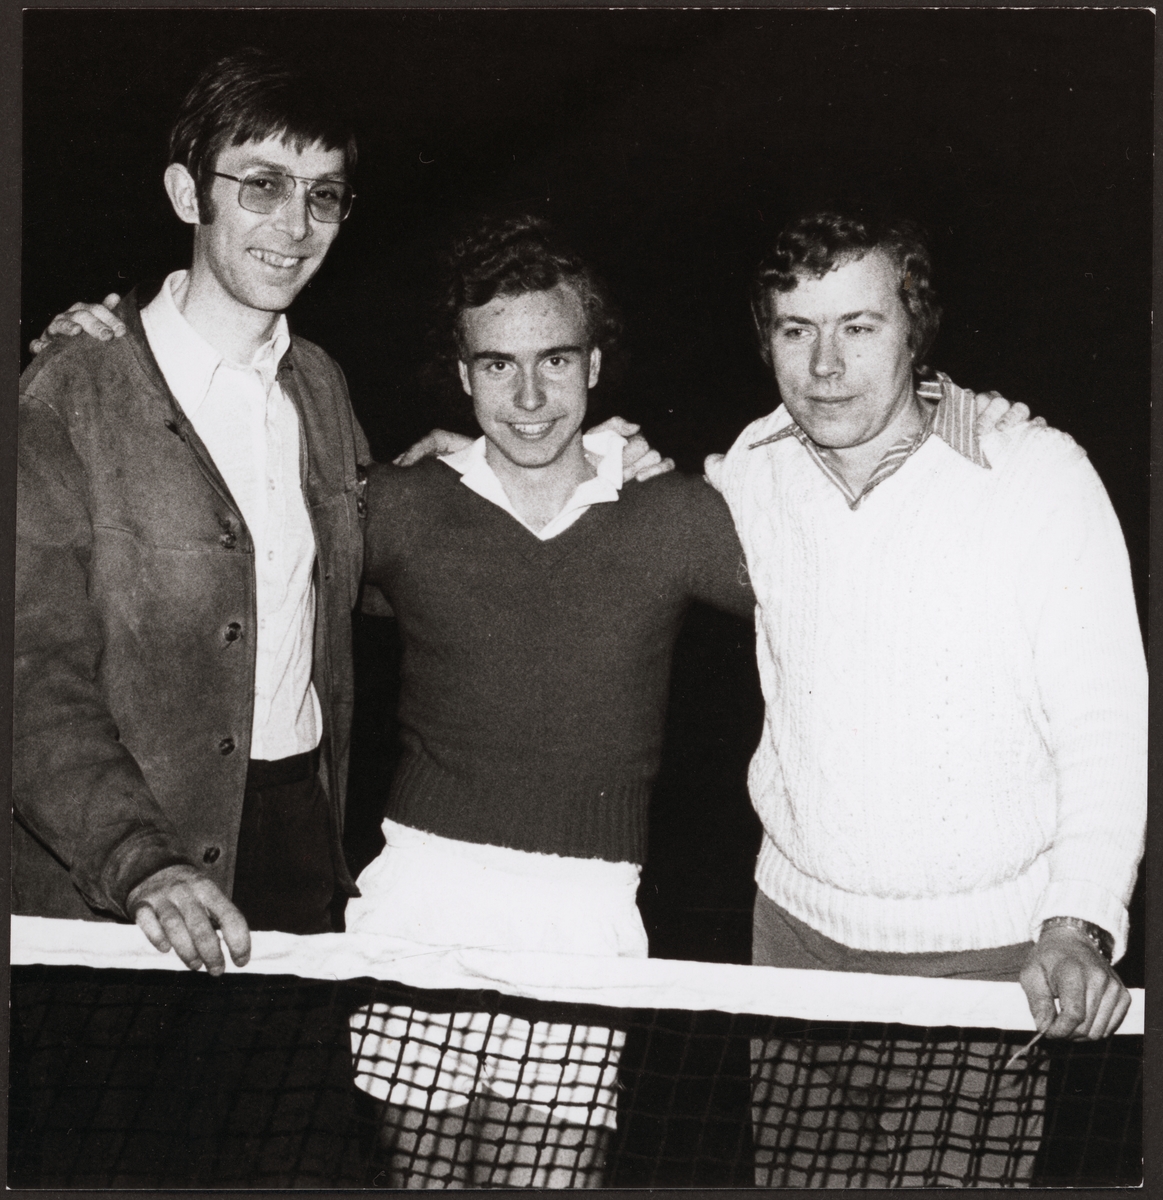 Från vänster: Roland Thörnqvist, Inge Svensson och Bert Johansson. Gruppsegrare i en tennisturnering.